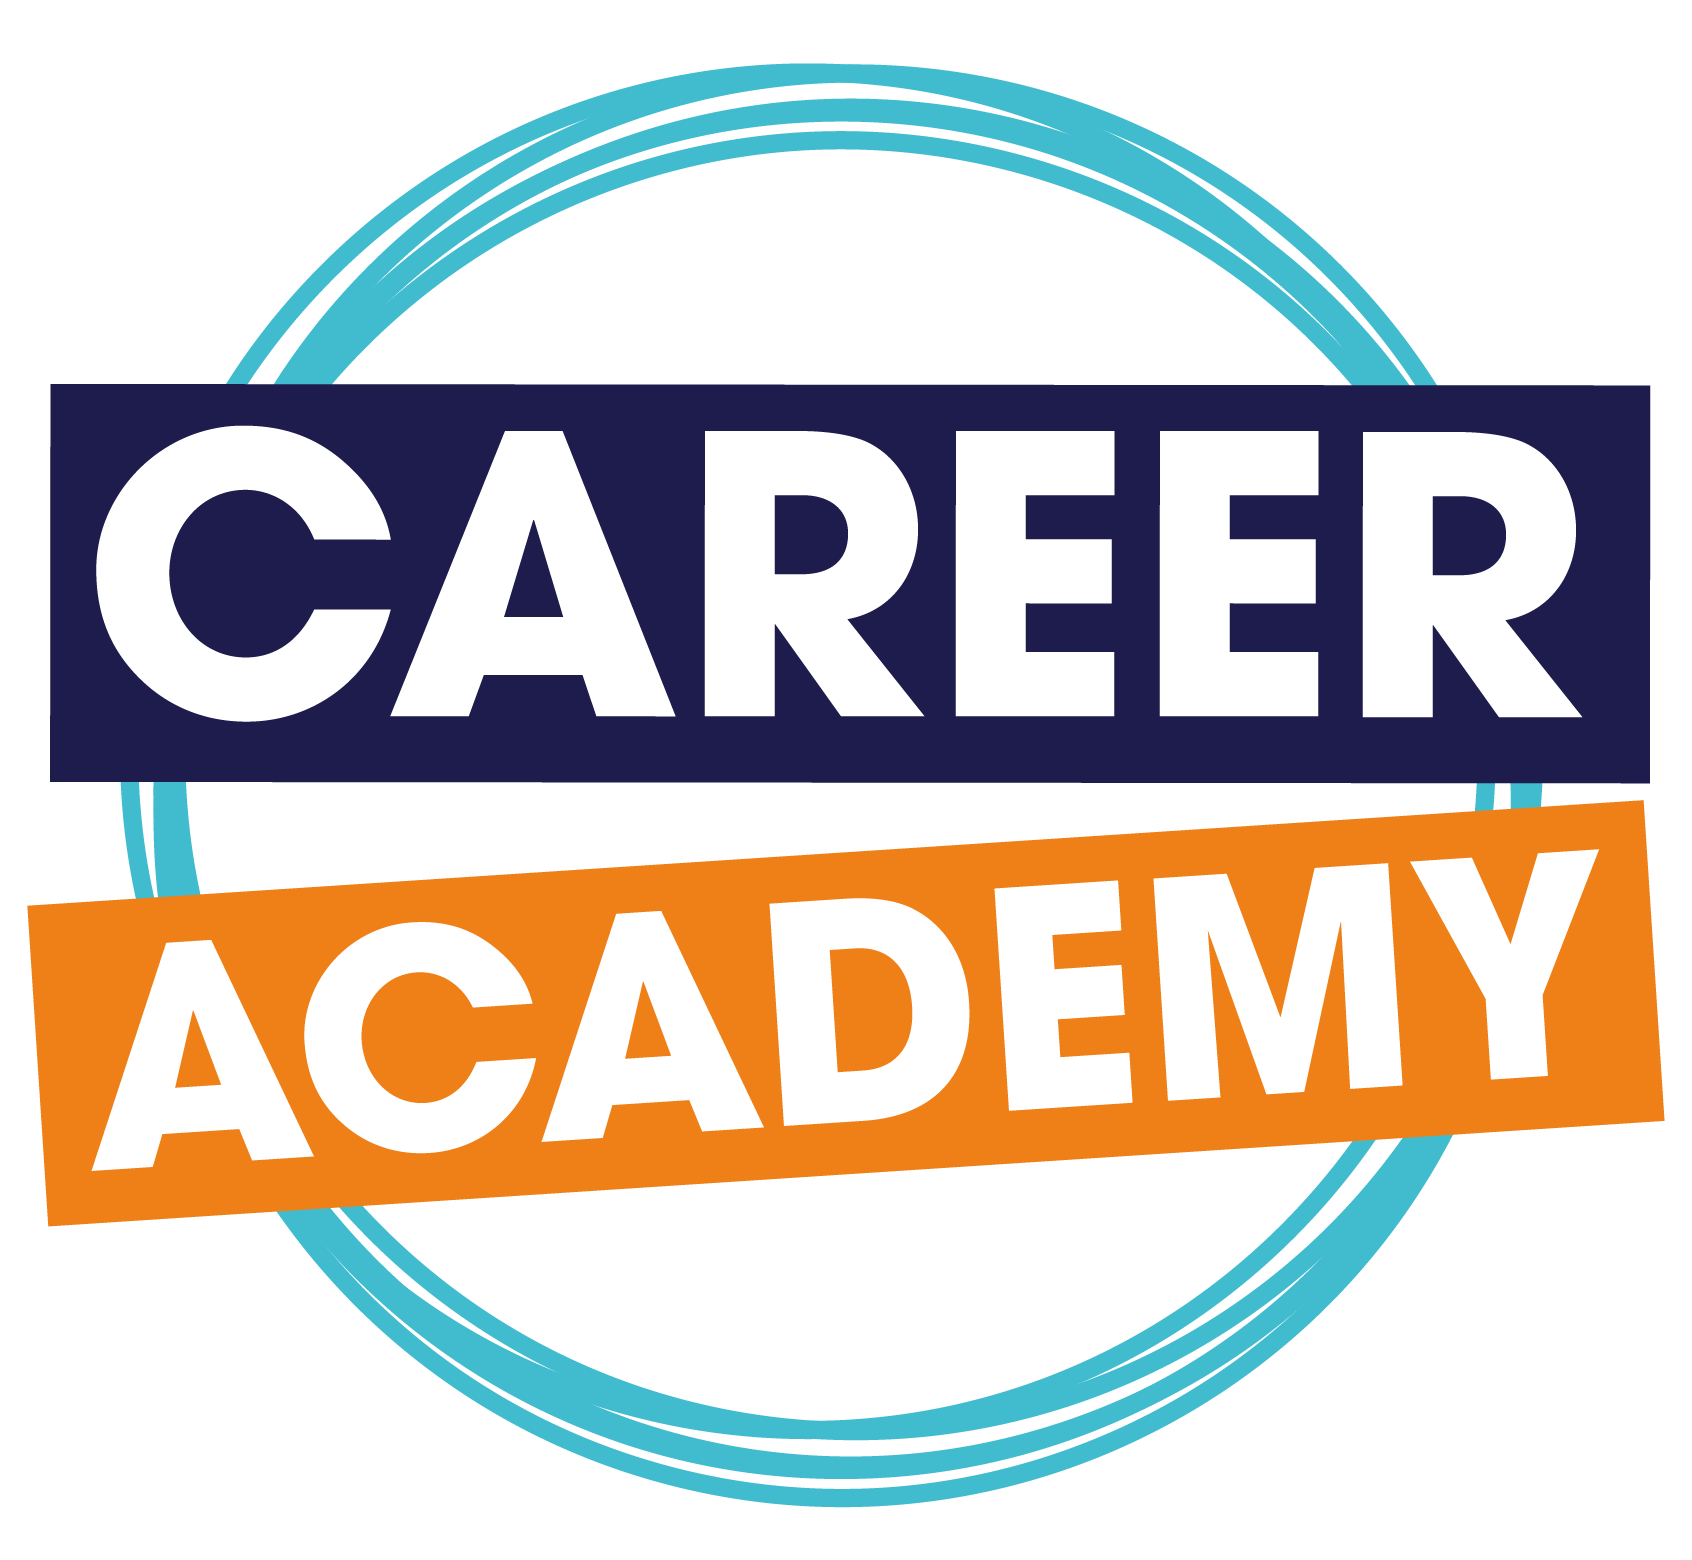 Career Academy